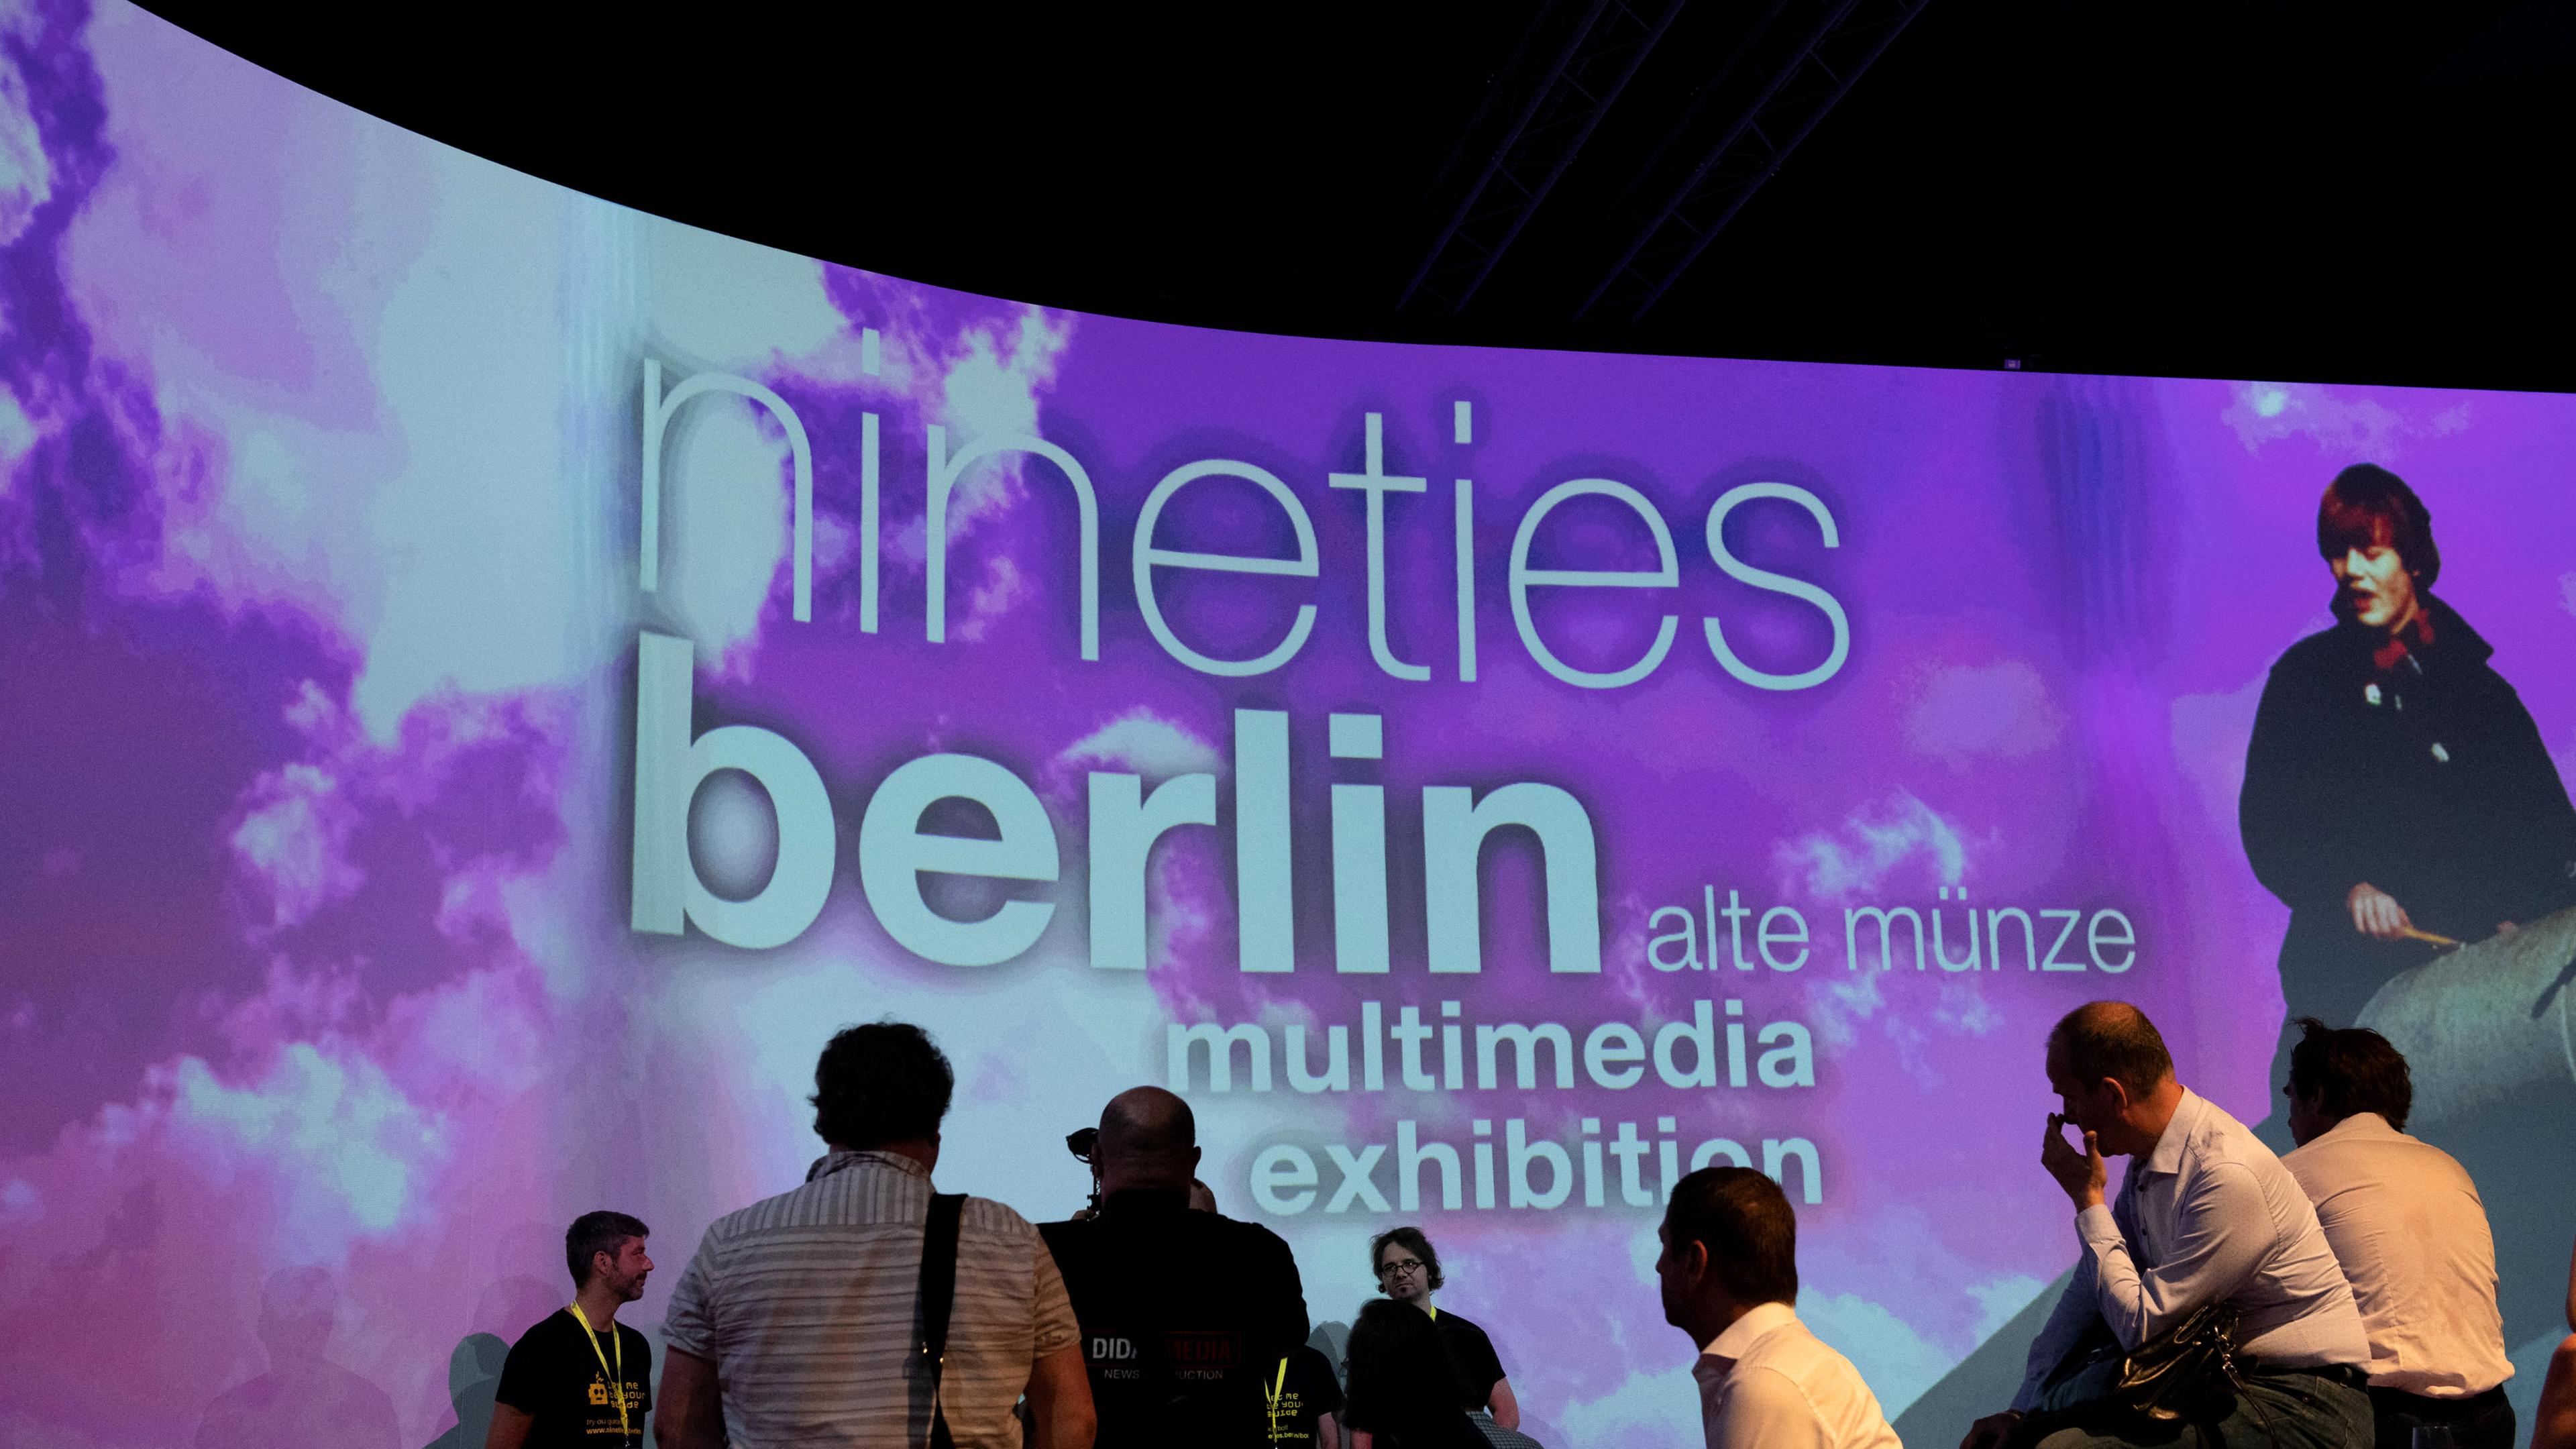 Der Titel der Ausstellung "Nineties Berlin" wird auf eine Leinwand in der Alten Münze projeziert